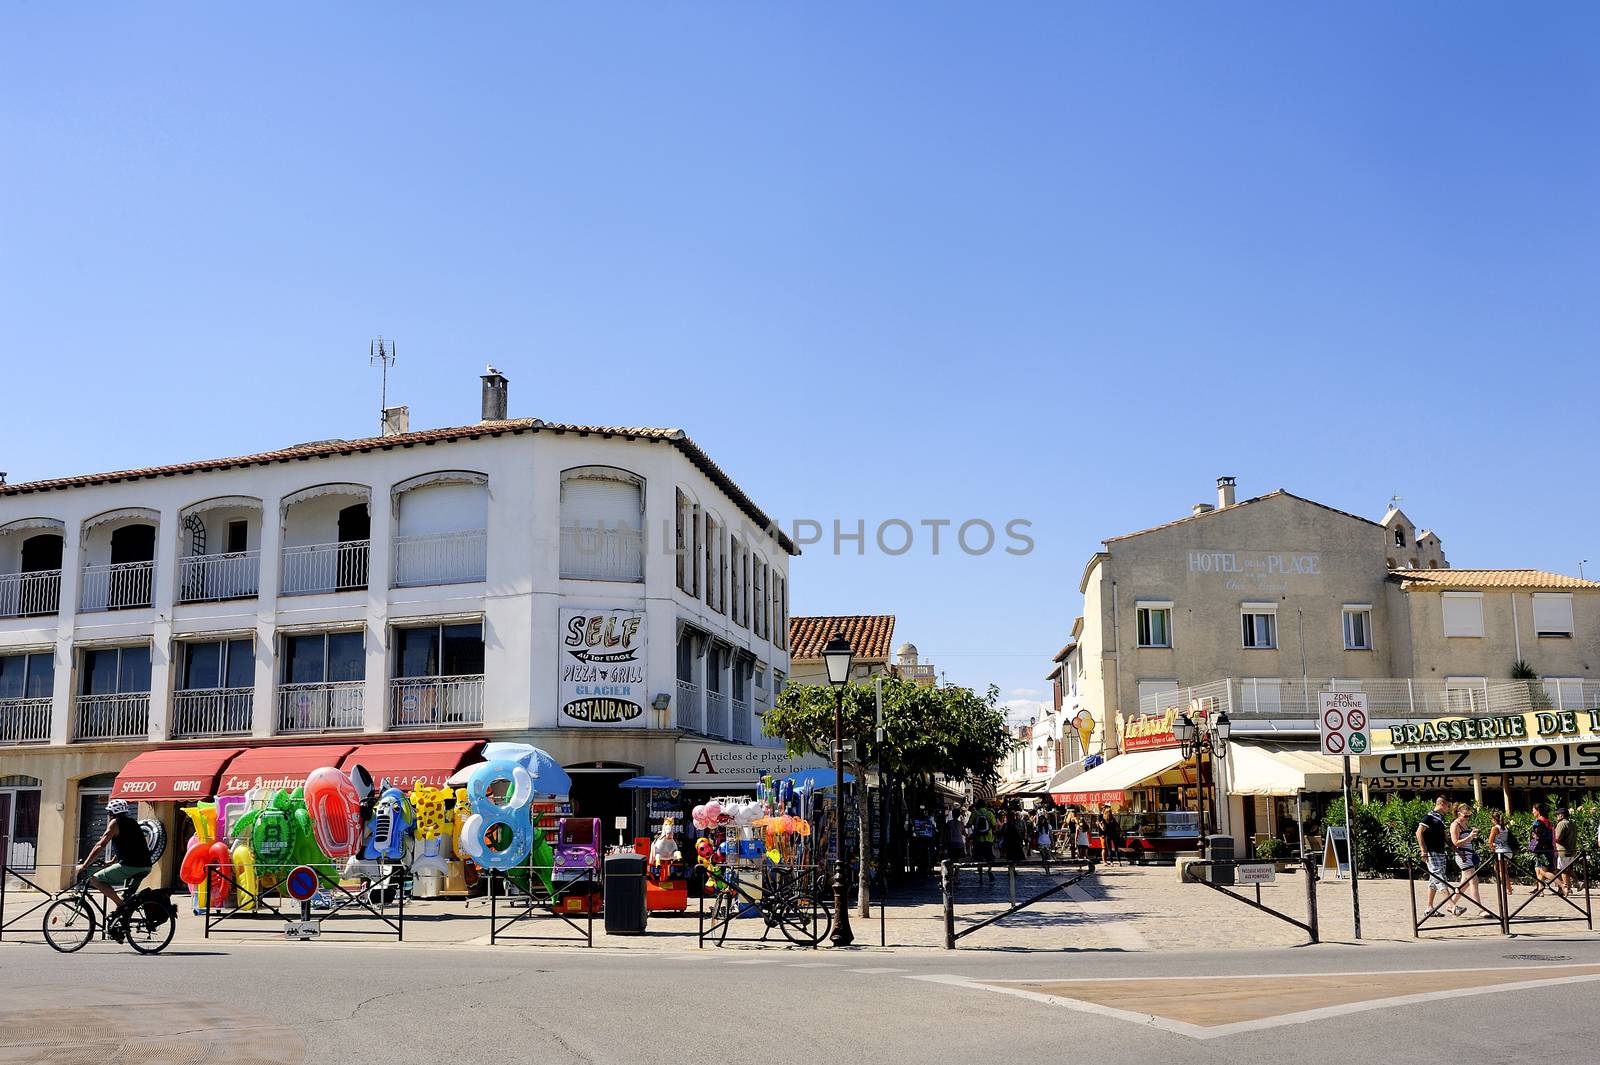 Town center of Saintes-Maries-de-la-Mer by gillespaire